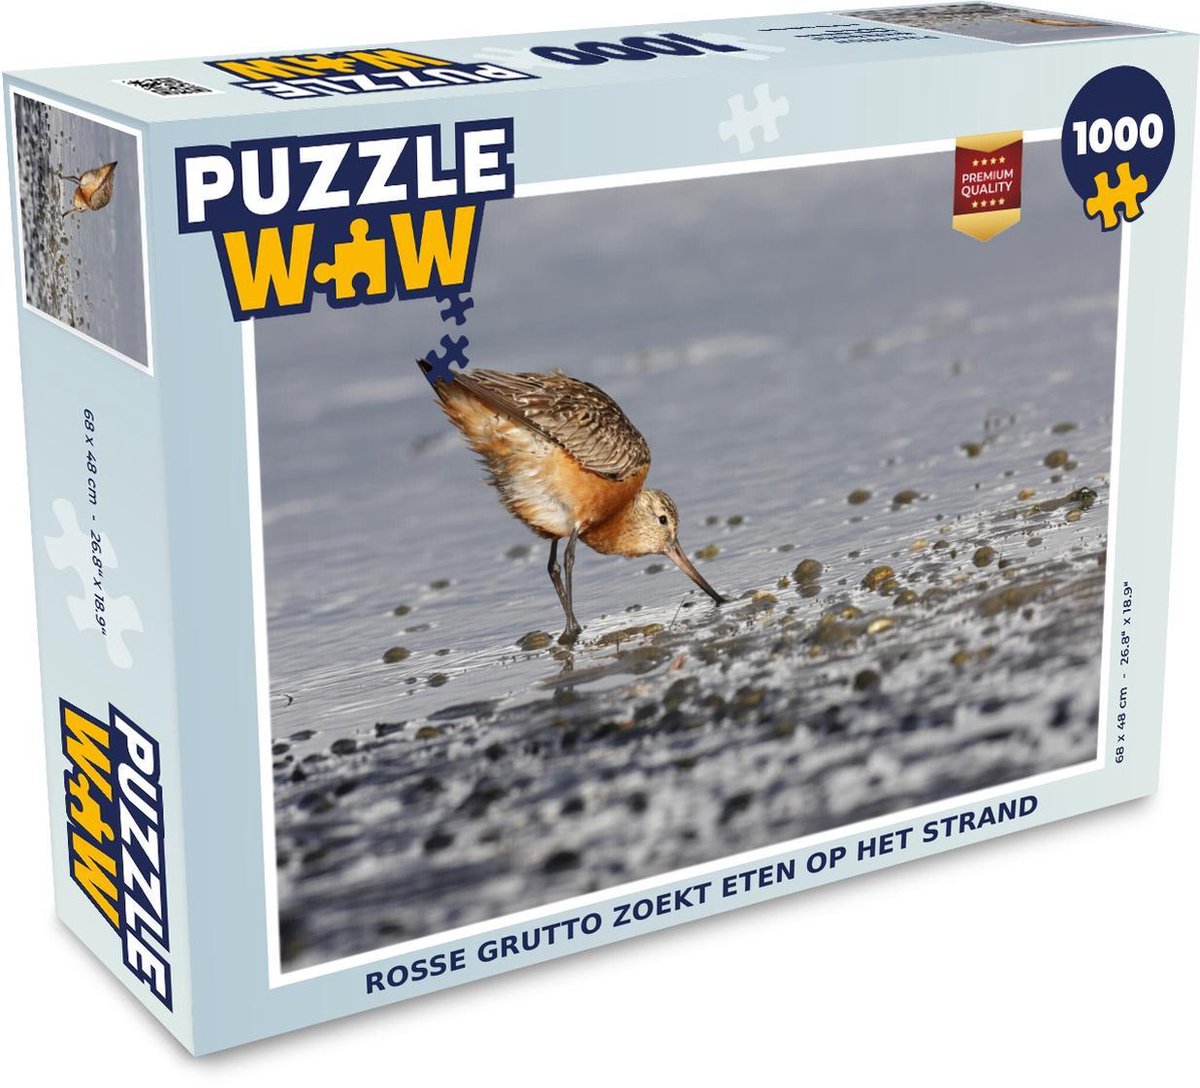 Afbeelding van product Puzzel 1000 stukjes volwassenen Rosse grutto 1000 stukjes - Rosse grutto zoekt eten op het strand - PuzzleWow heeft +100000 puzzels